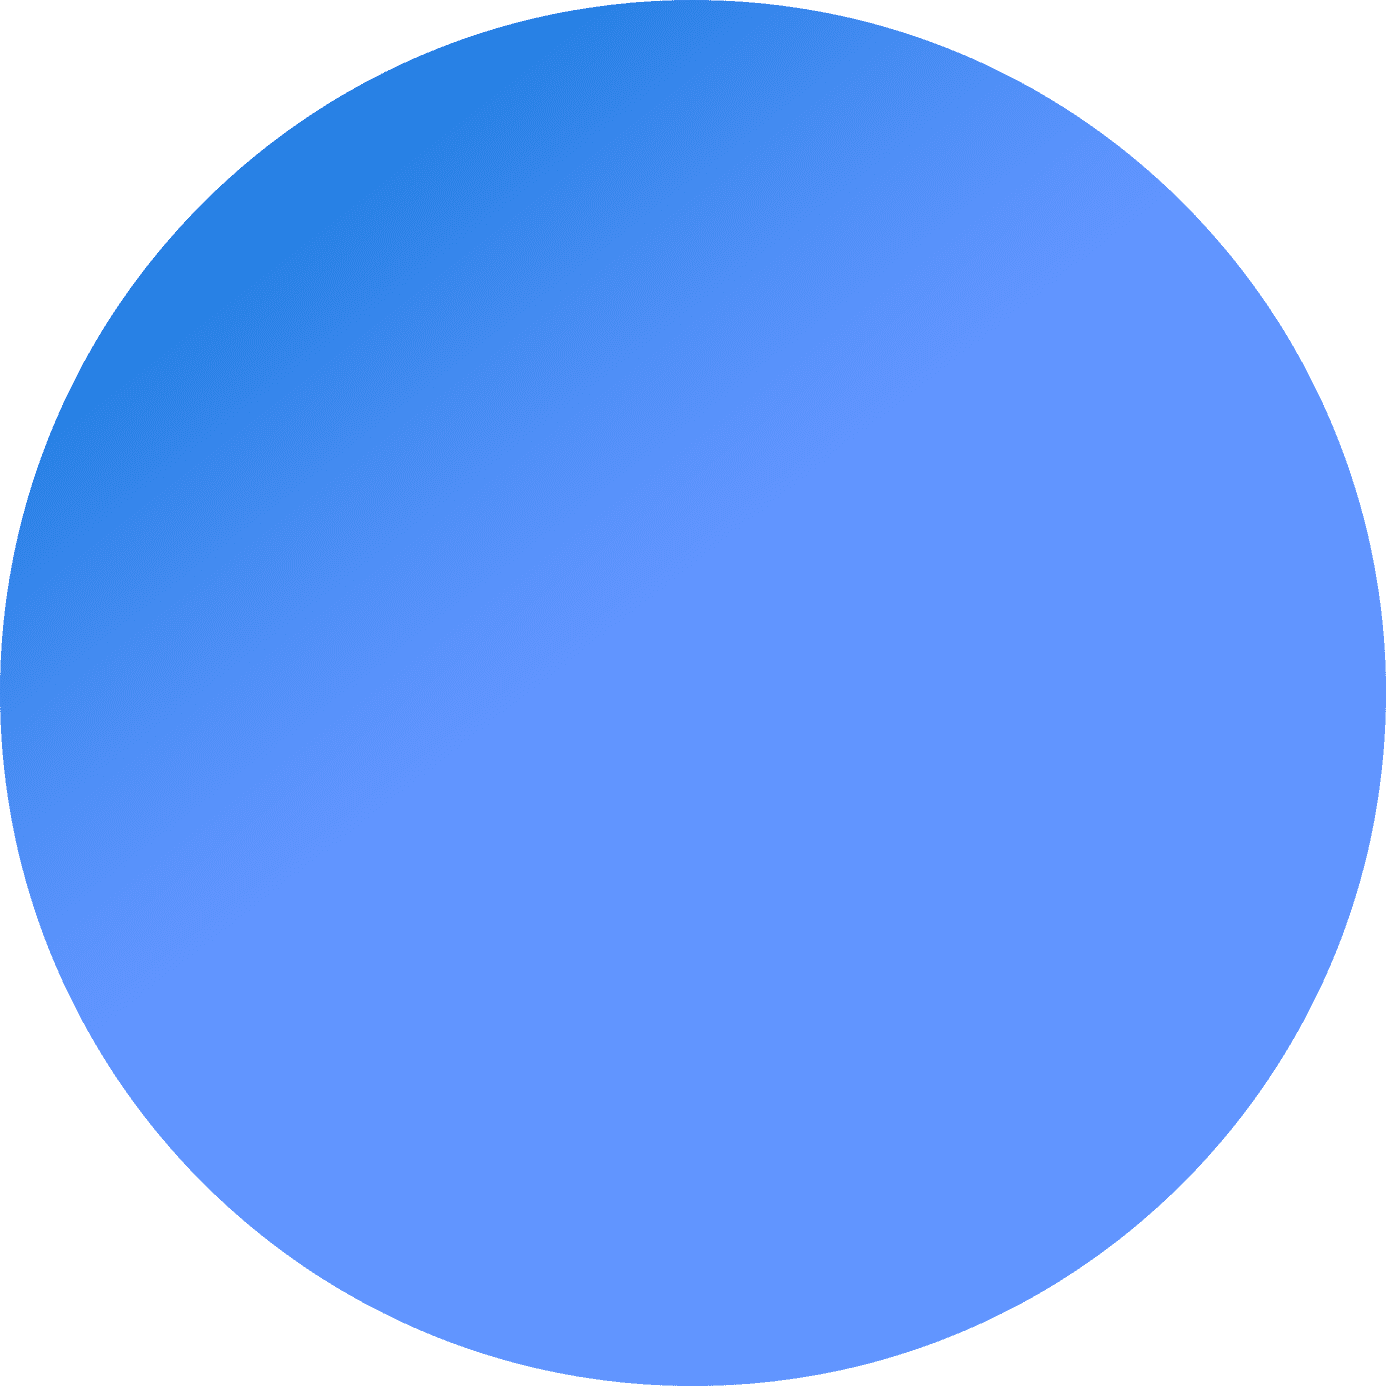 Blue shape